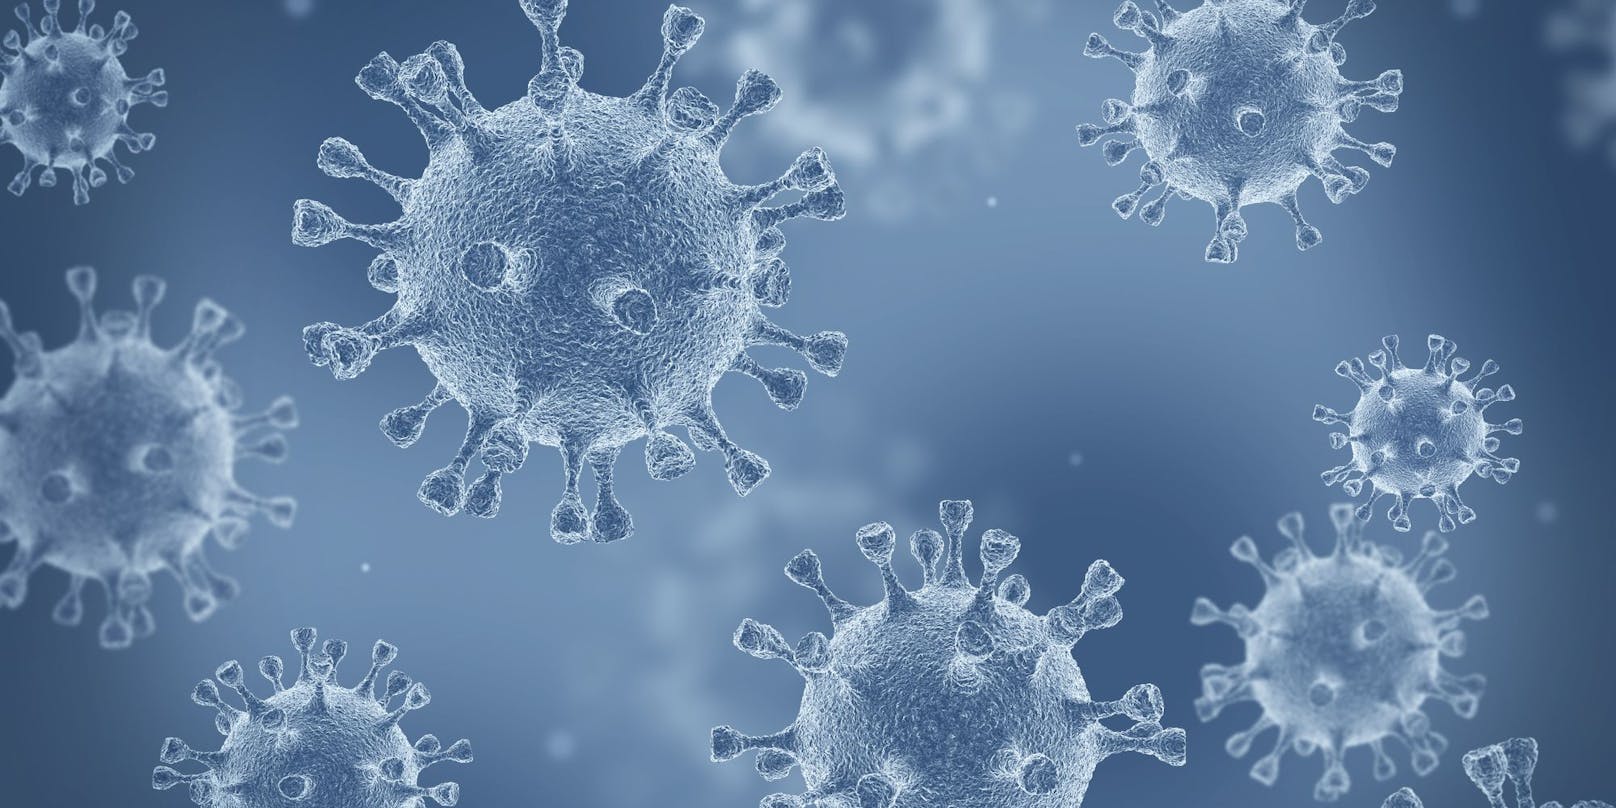 Fluggäste, die von England nach Südkorea reisten, haben sich mit der neuen Coronavirus-Mutation angesteckt.